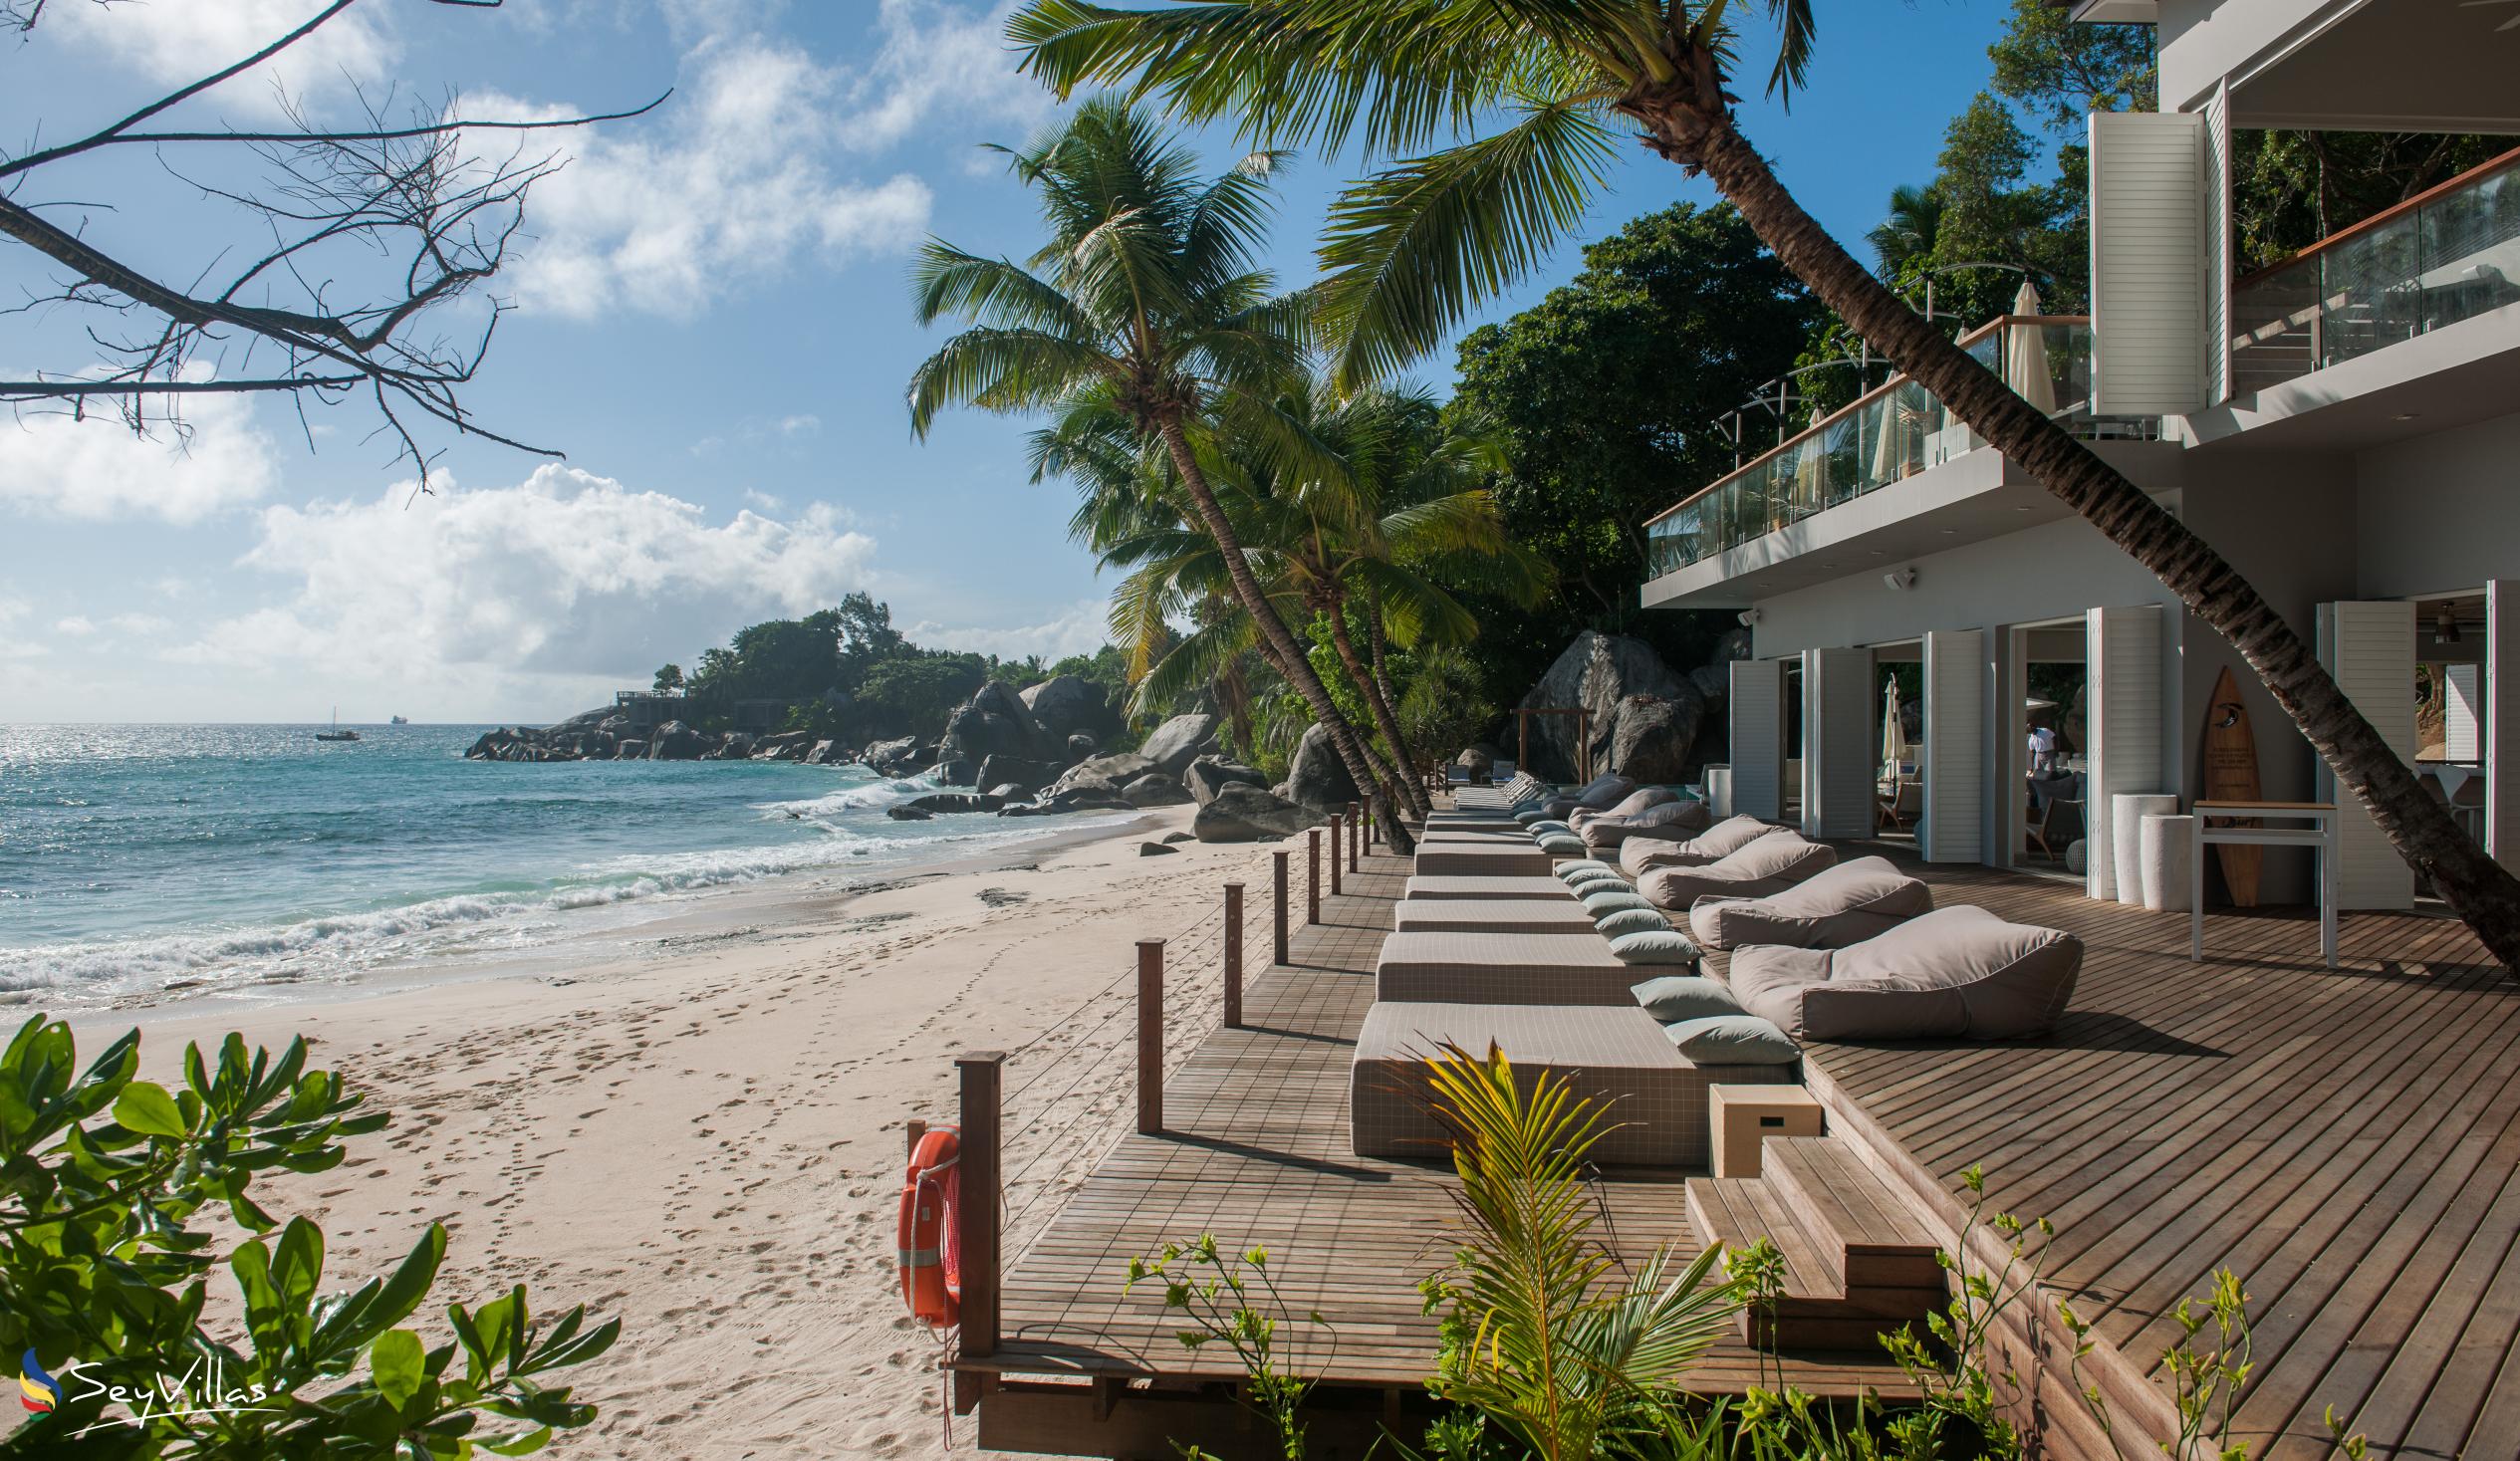 Foto 22: Carana Beach Hotel - Aussenbereich - Mahé (Seychellen)